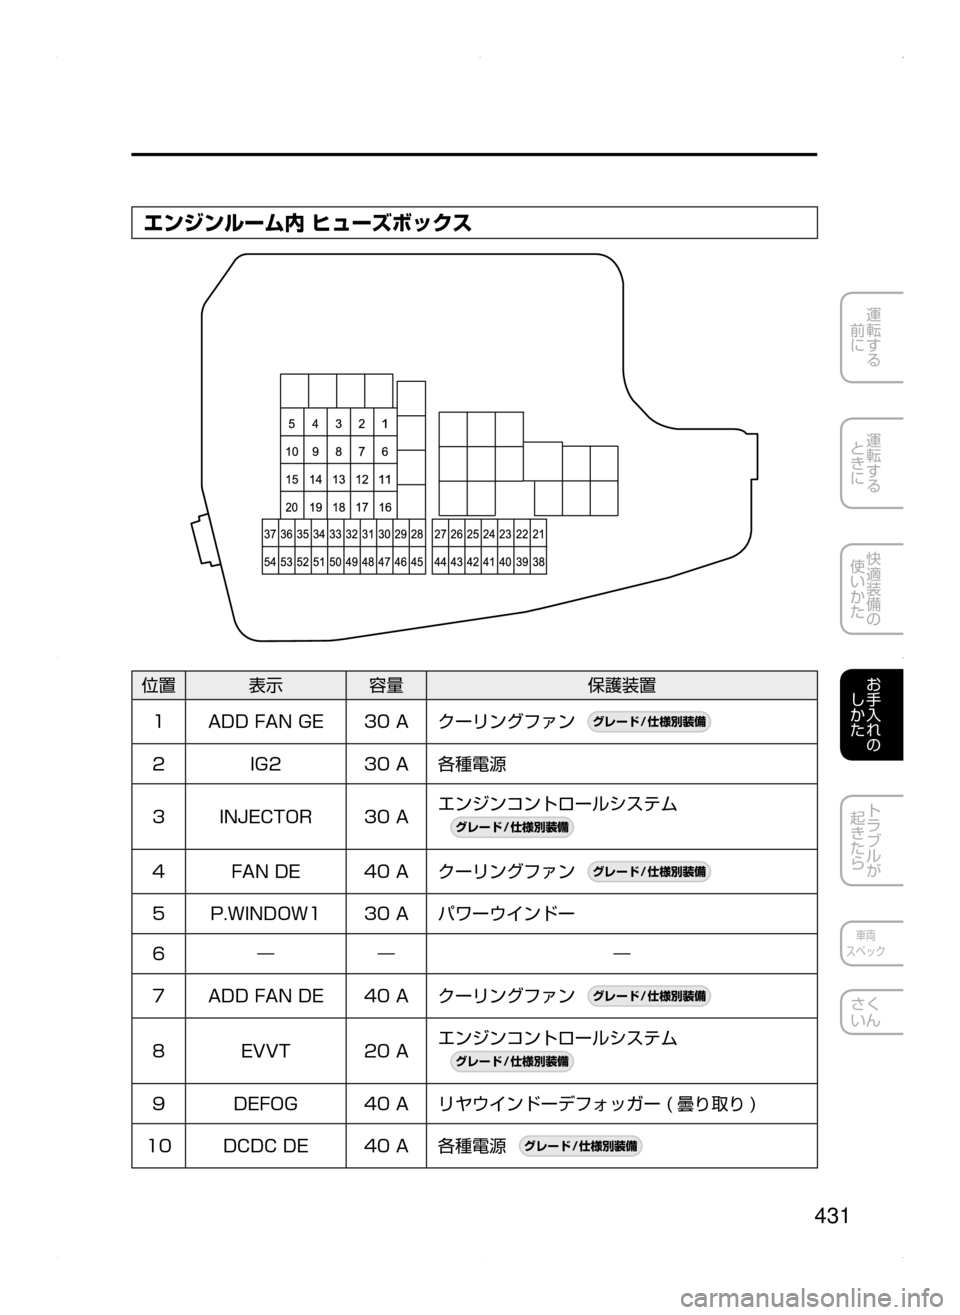 MAZDA MODEL CX-5 2015  取扱説明書 (in Japanese) 431
運転する
﻿﻿
前に
運転する
﻿﻿
ときに
快適装備の
使いかた
お手入れの
しかた
トラブルが
起きたら
車両
スペック
さく
いん
エンジンルーム